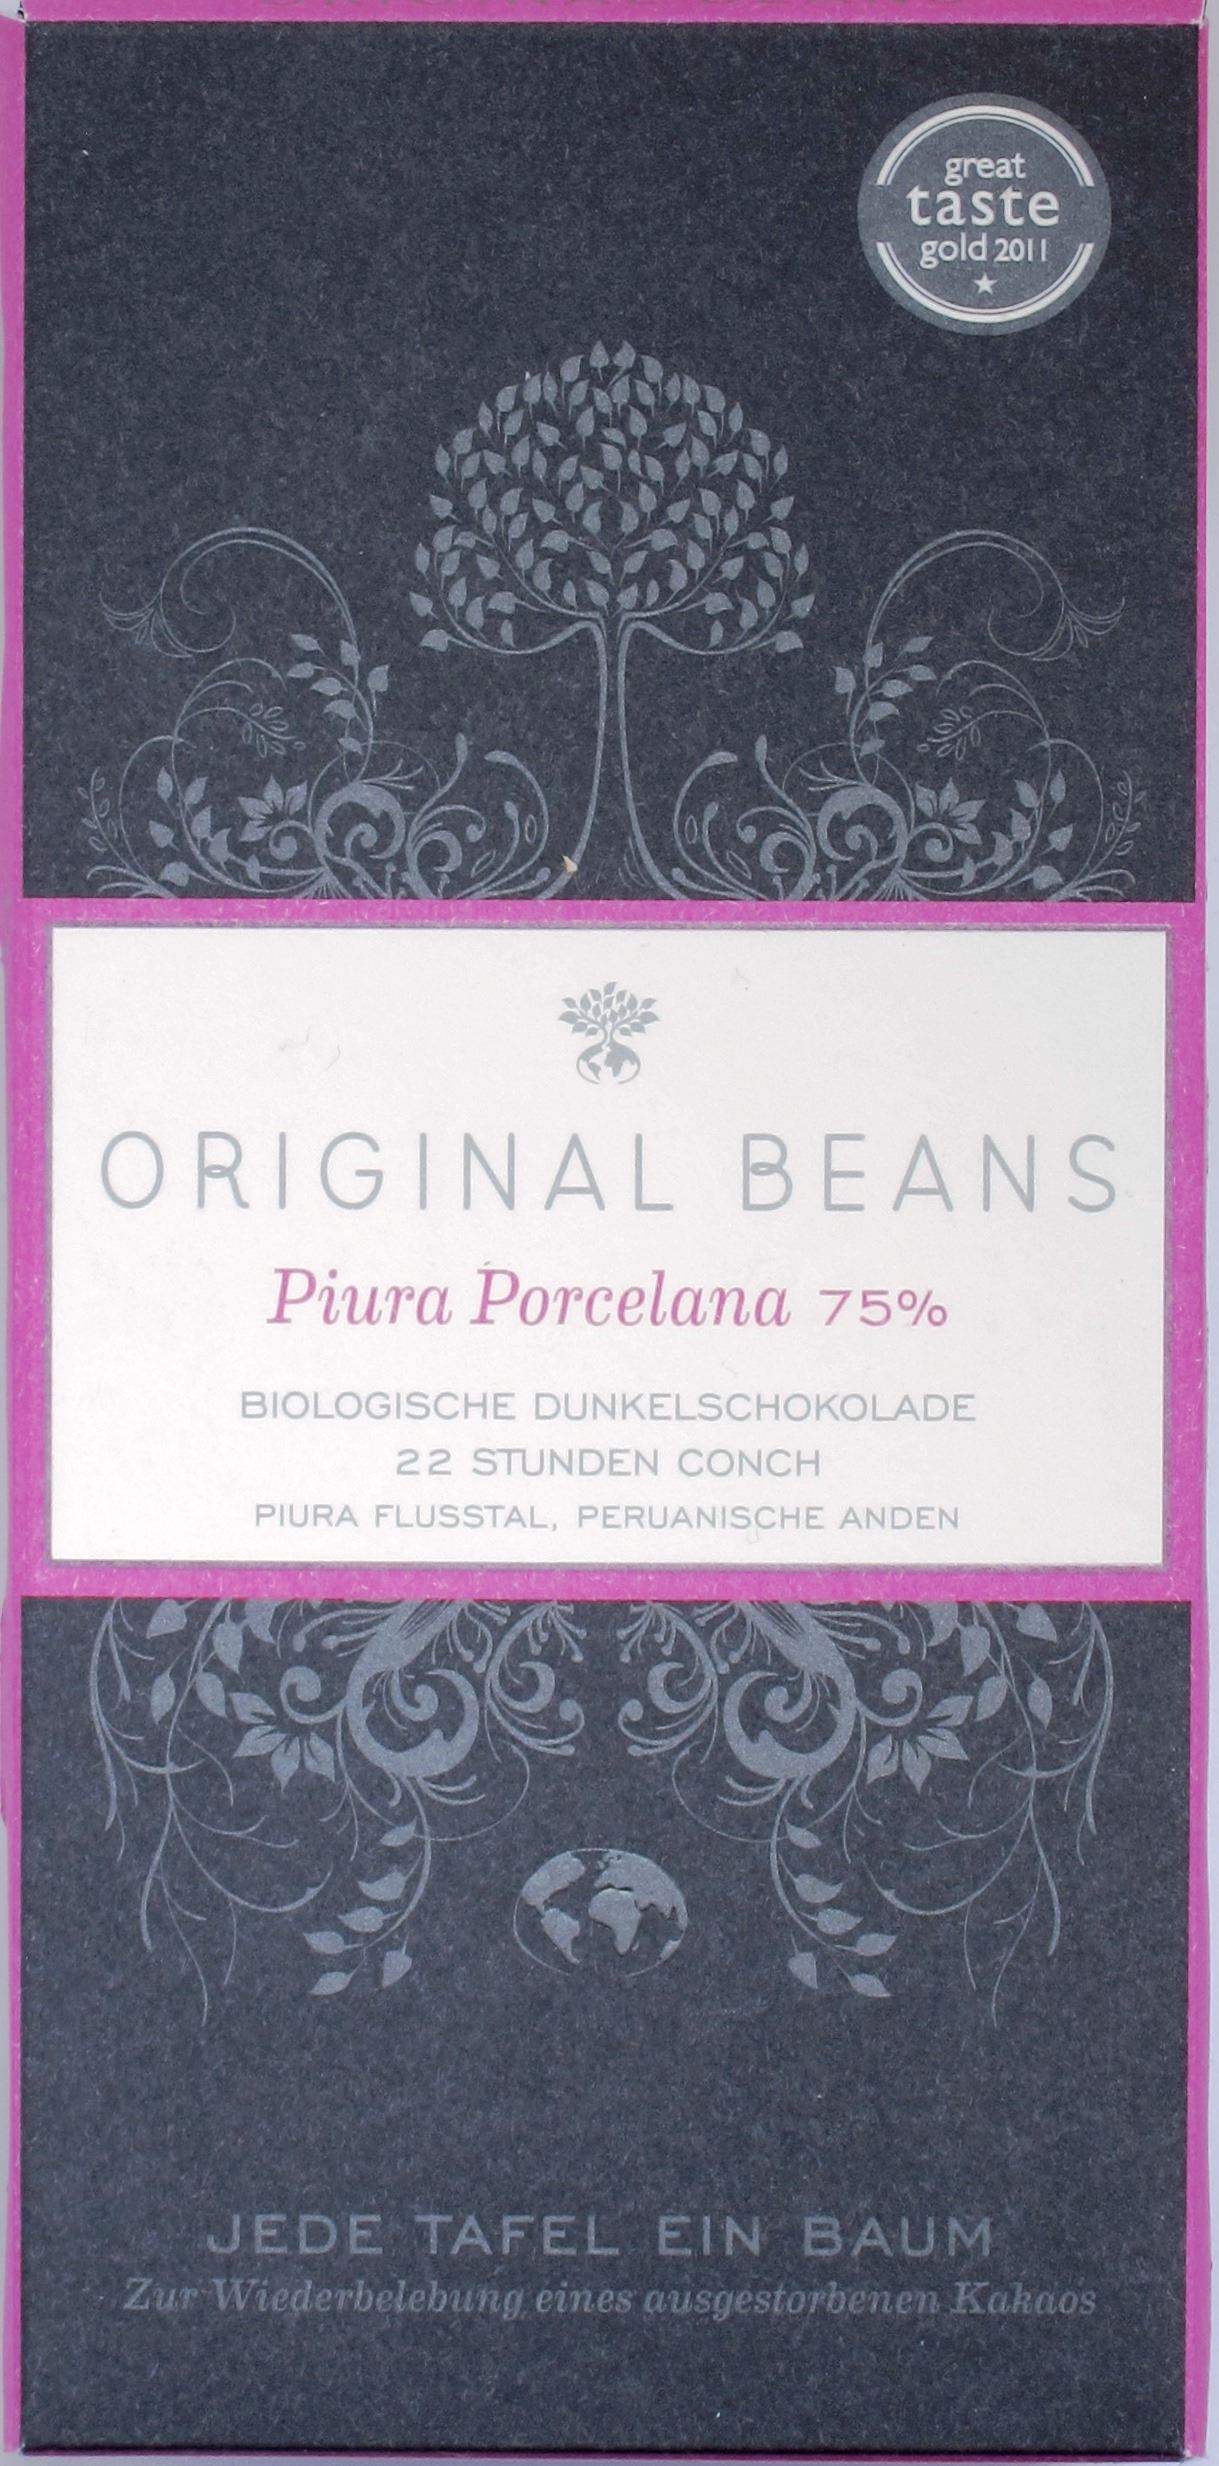 Packung Original Beans 75%-Porcelana-Schokolade aus Peru